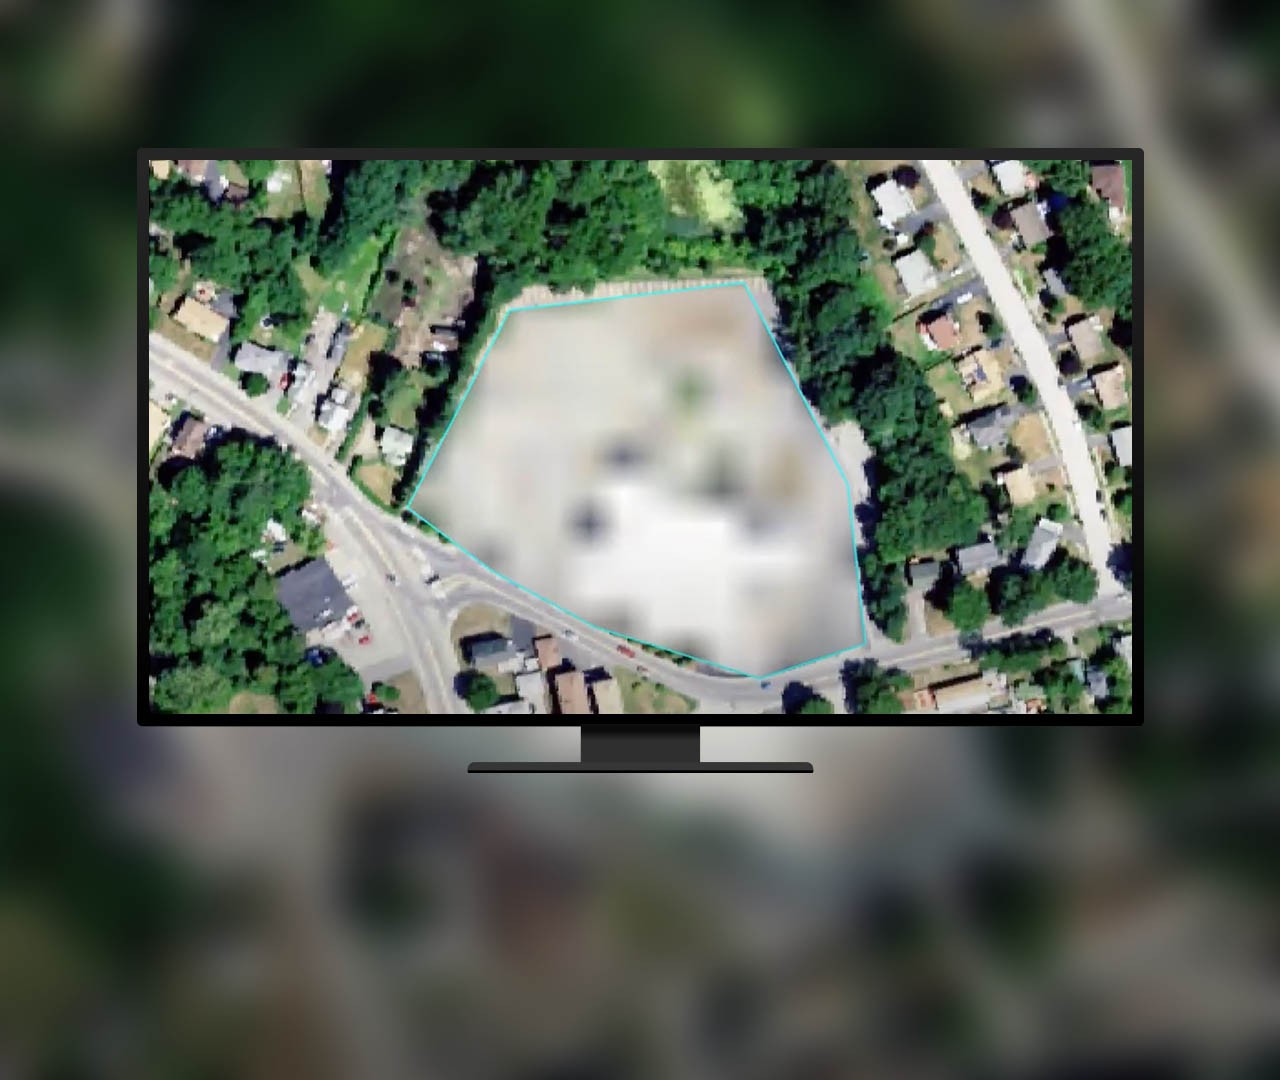 Luftbild eines Stadtteils, auf dem eine rautenförmige Fläche mit blaugrünem Umriss unscharf dargestellt ist